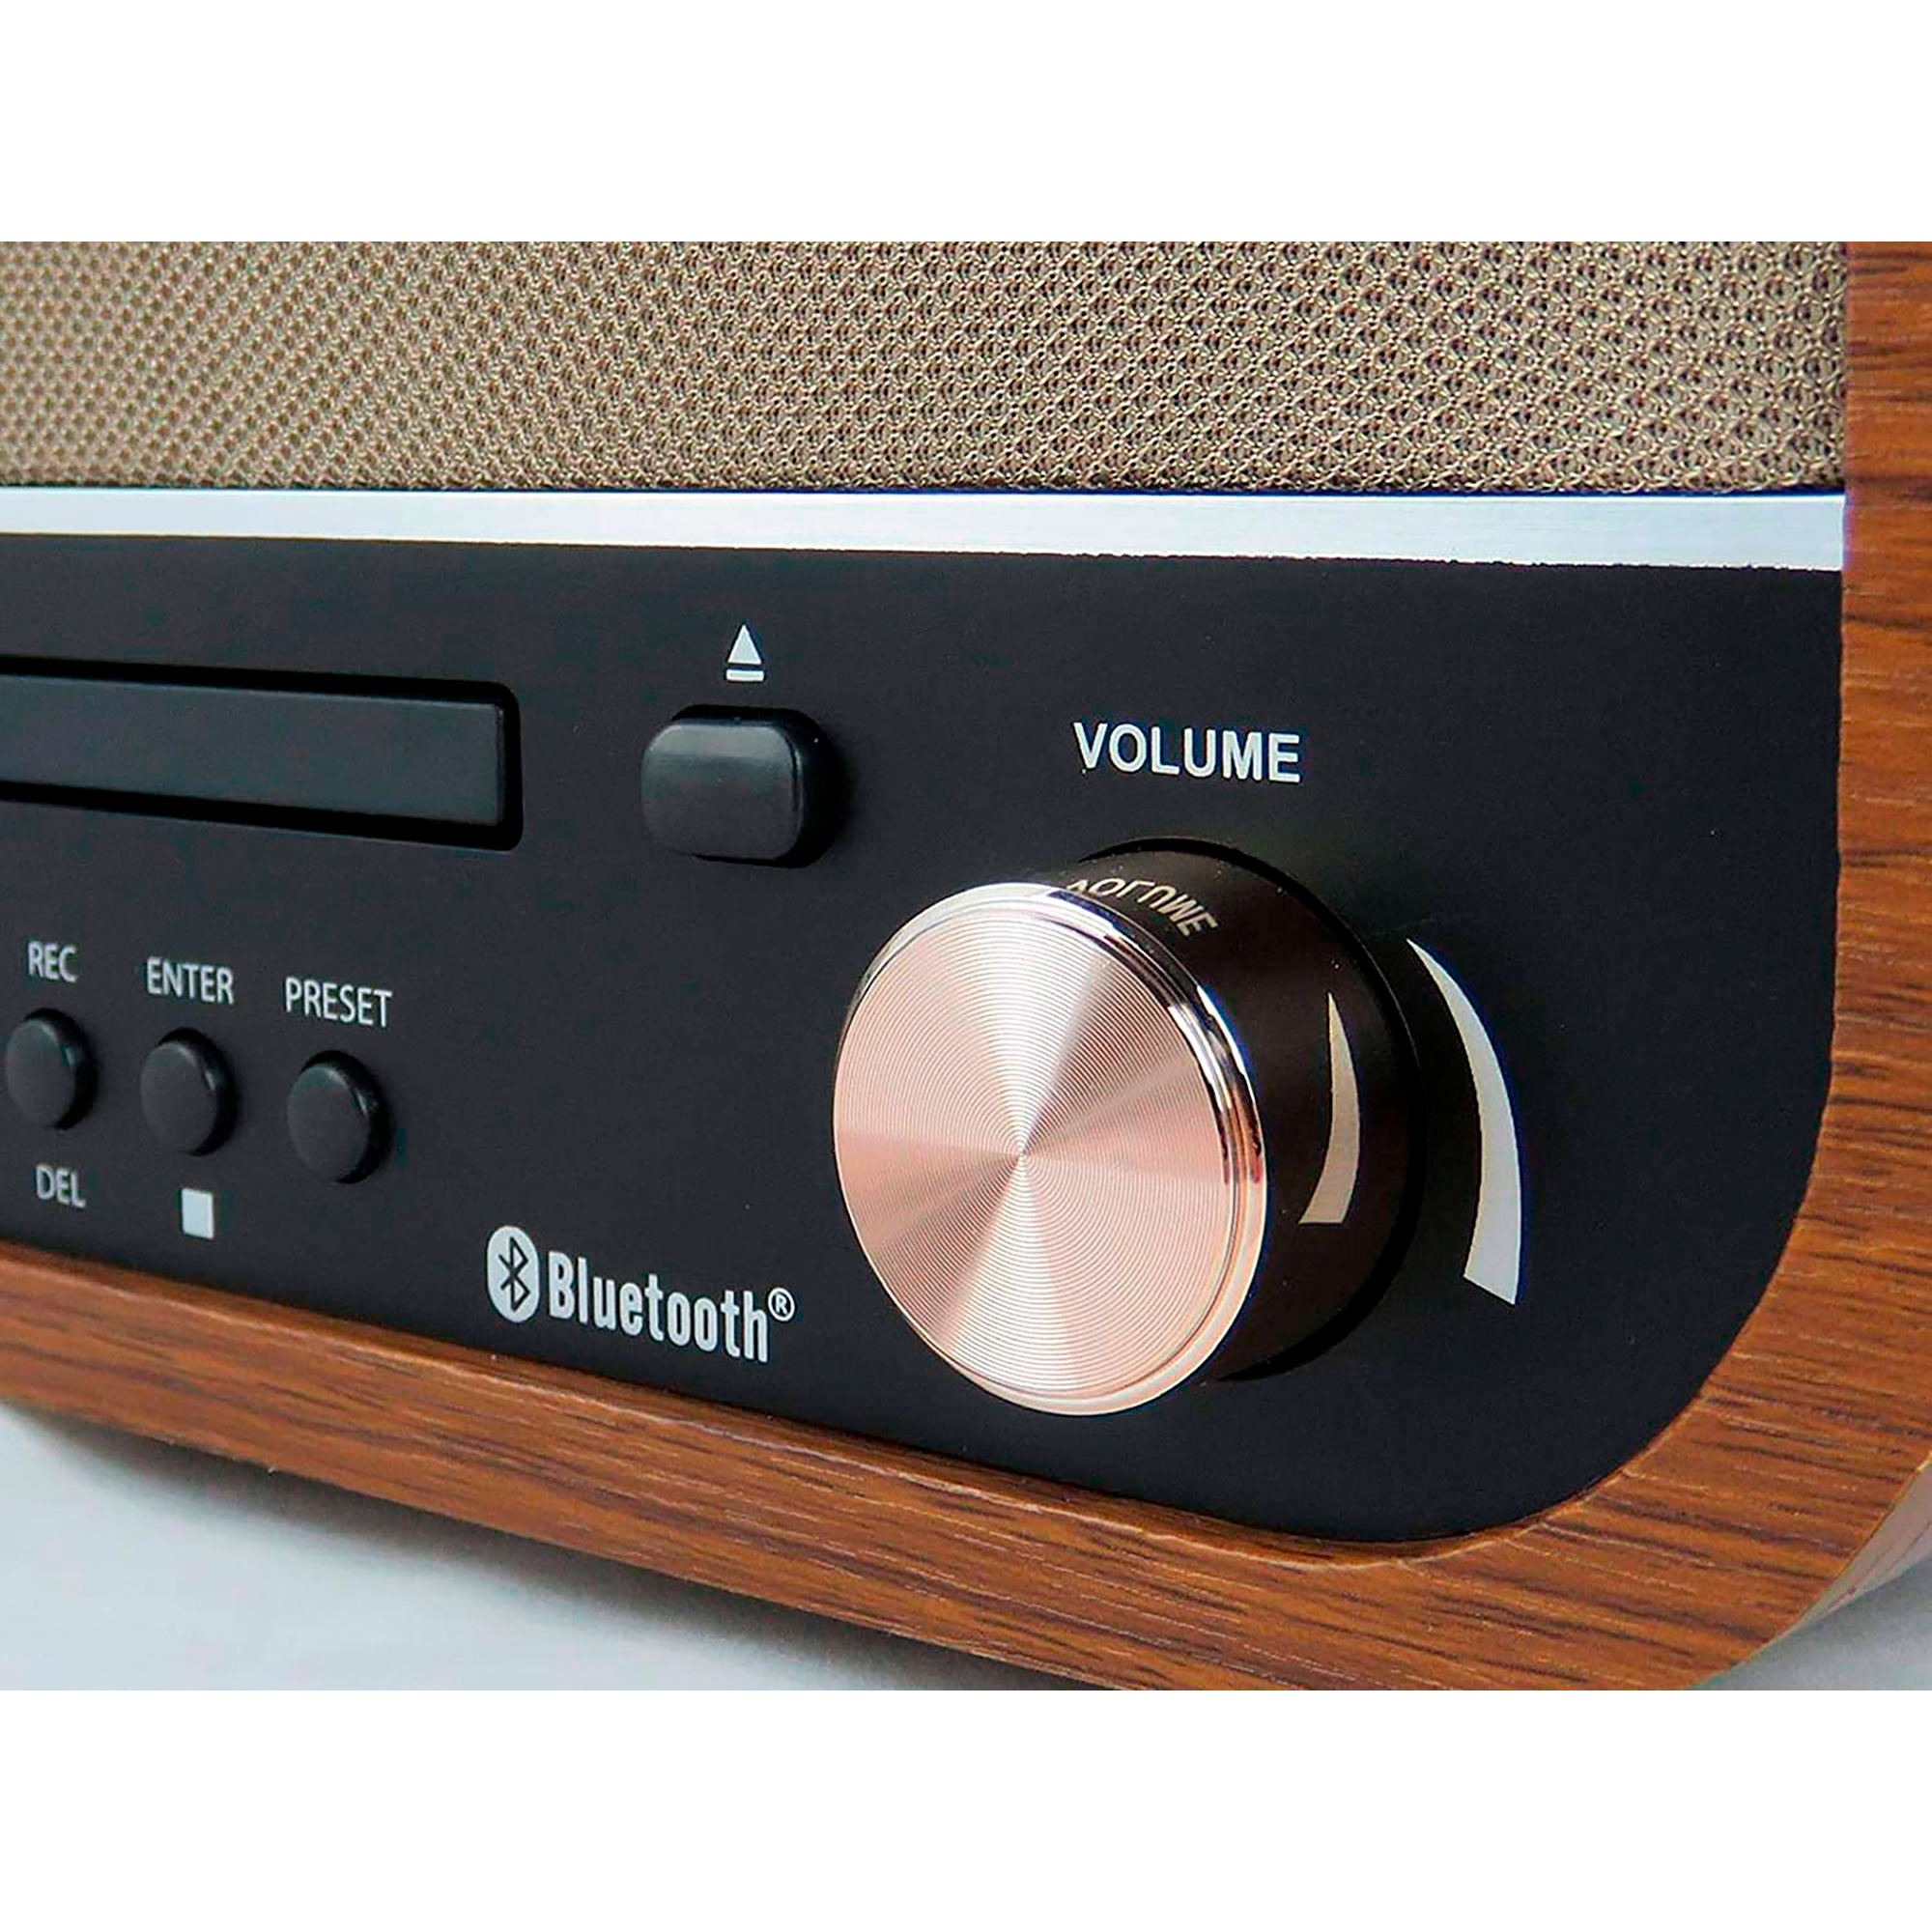 Dual NR 4 Nostalgie - Cadena musical con tocadiscos (radio FM/AM, CD-RW,  MP3, USB, casete, entrada auxiliar), color marrón (importado) : :  Electrónica